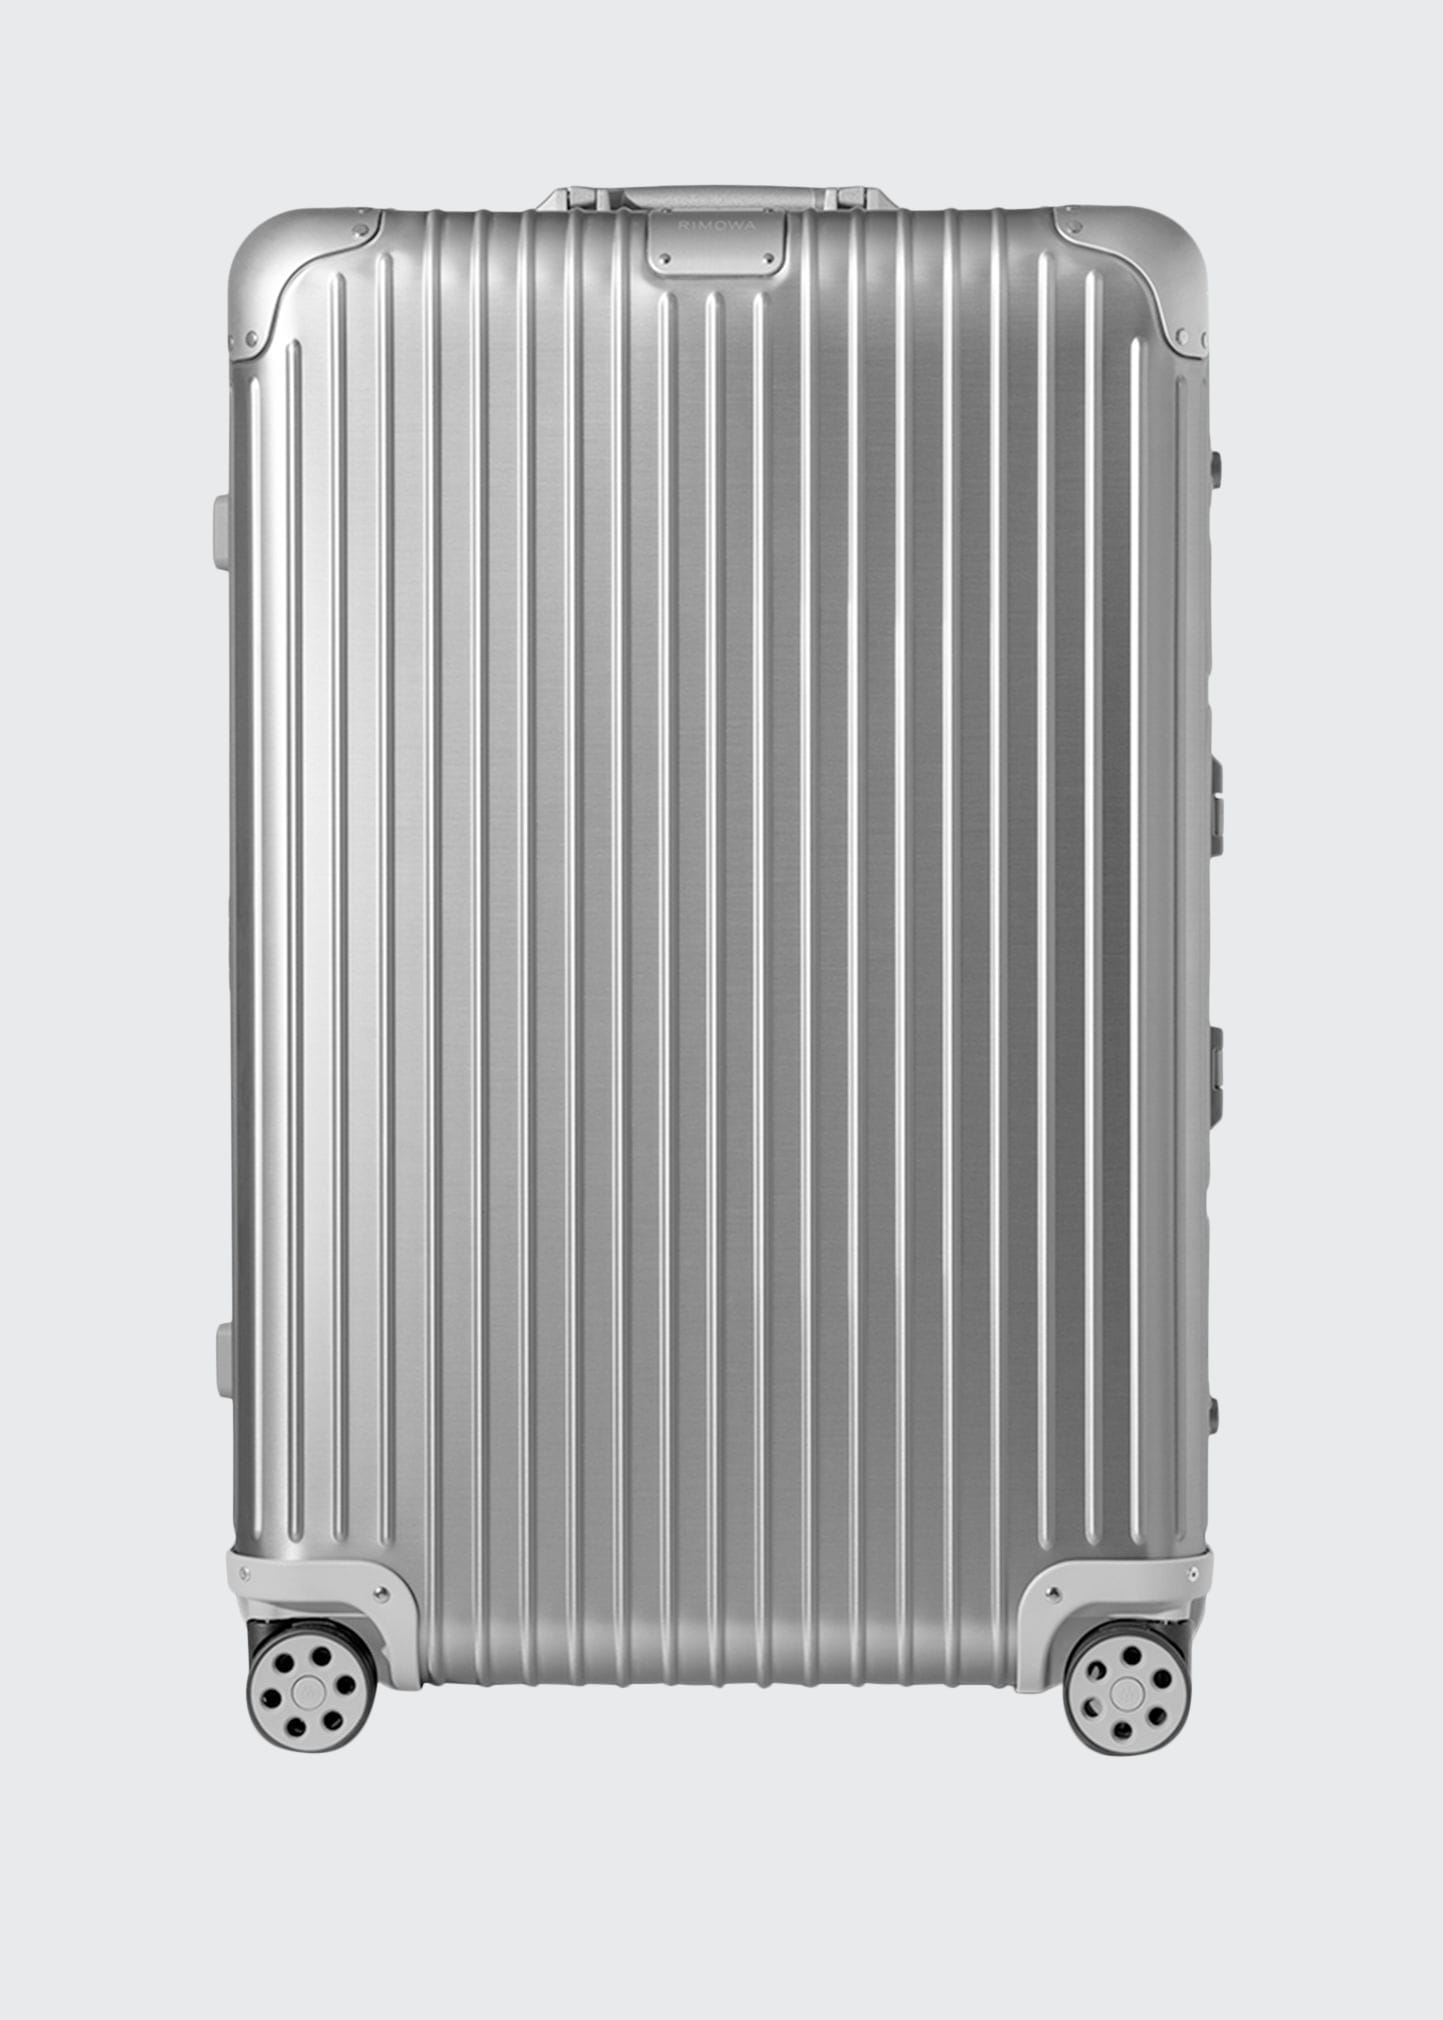 10 Year Anniversary Aluminum Luggage